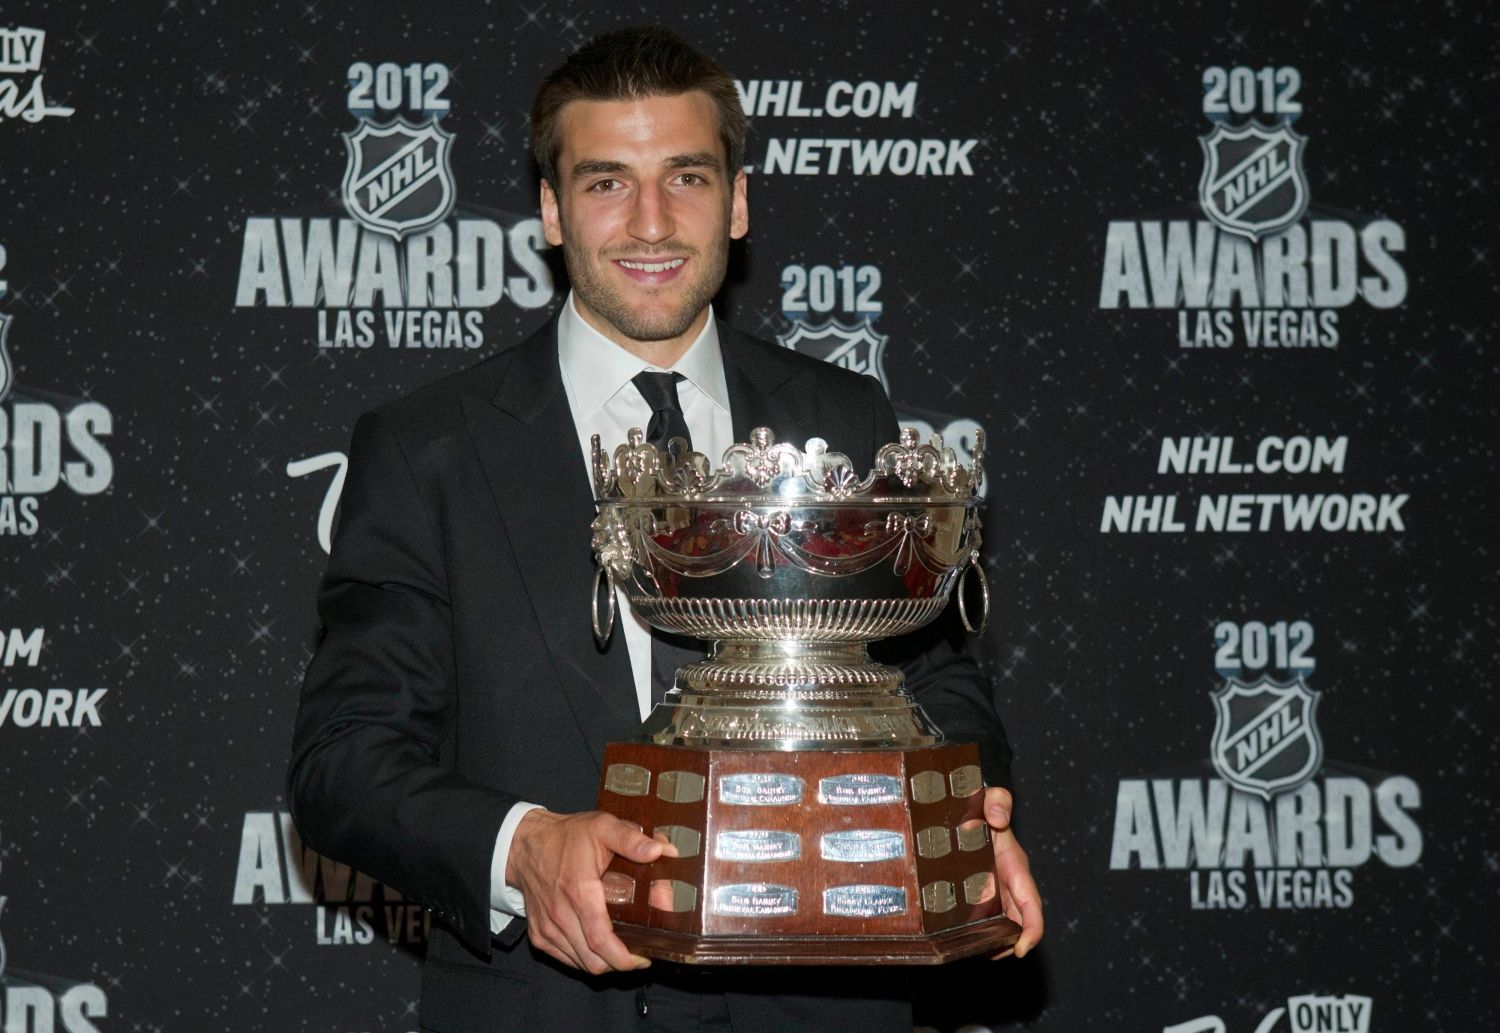 Hokejový útočník Bostonu Bruins Patrice Bergeron pózuje se Selke Trophy během předávání trofejí NHL v Las Vegas za sezónu 2011/12